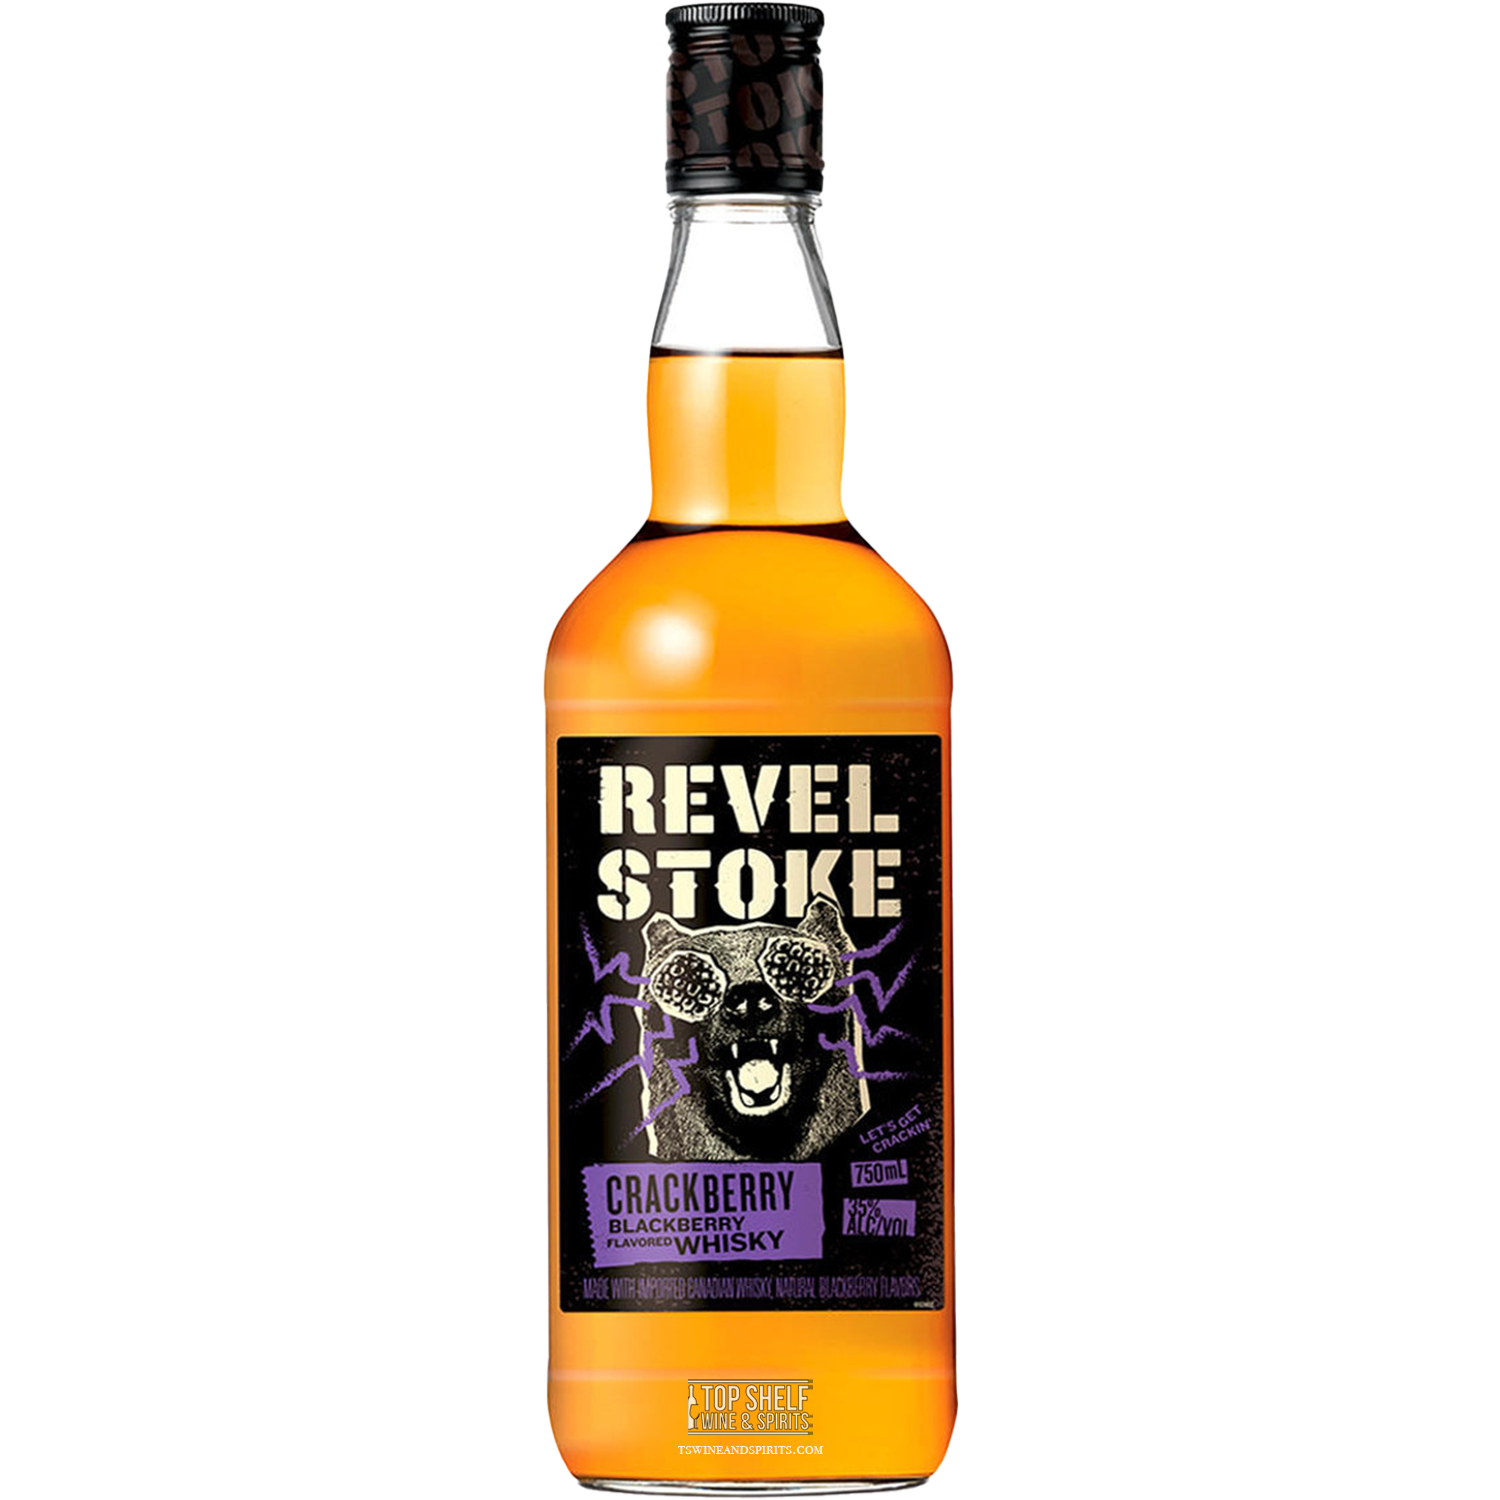 Revel Stoke Crackberry Blackberry Whiskey